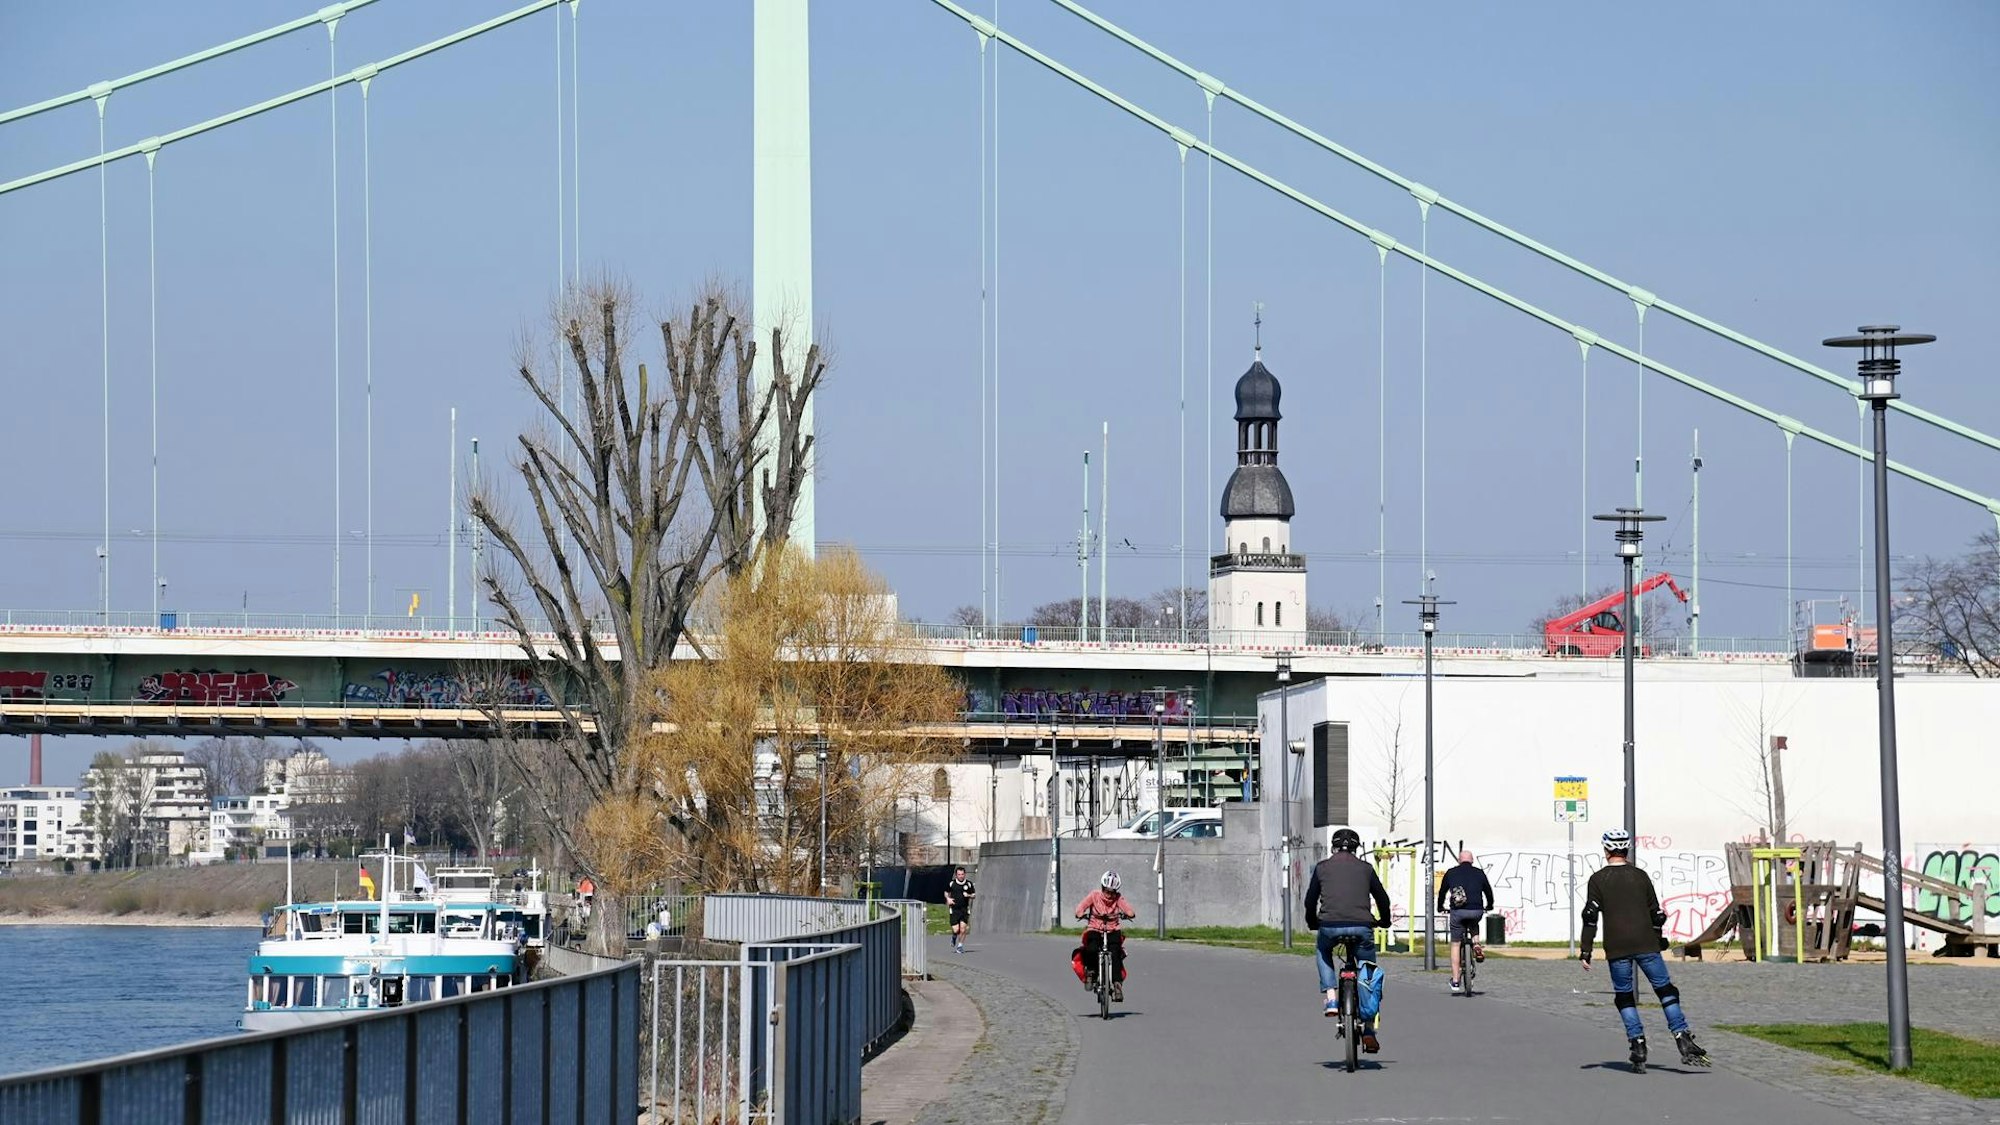 Rheinpromenade mit Mülheimer Brücke im Hintergrund